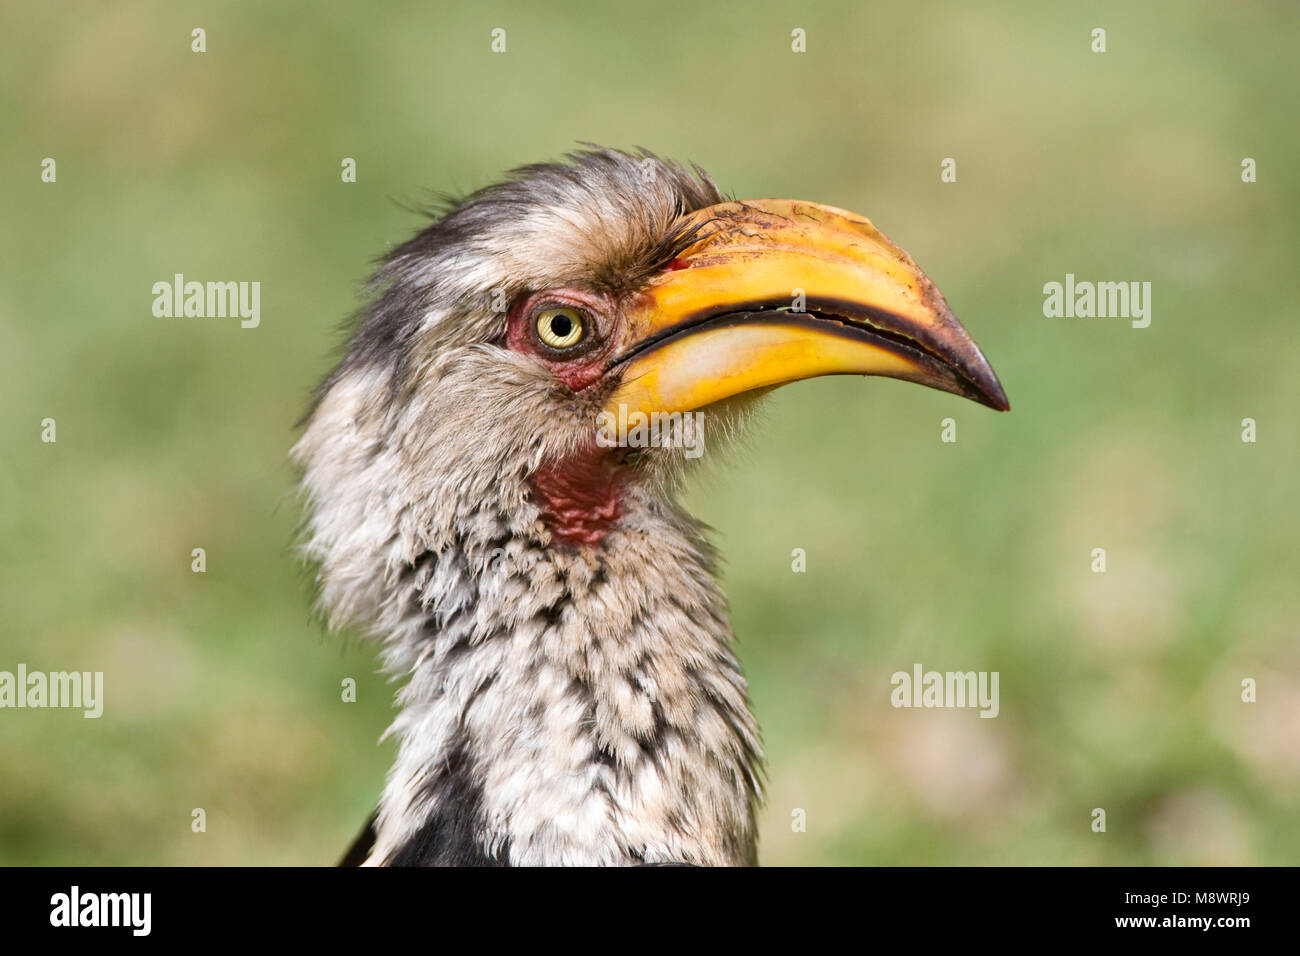 Zuidelijke Geelsnaveltok, Southern Yellow-Billed Hornbill, Tockus leucomelas, Geelsnaveltok Stock Photo